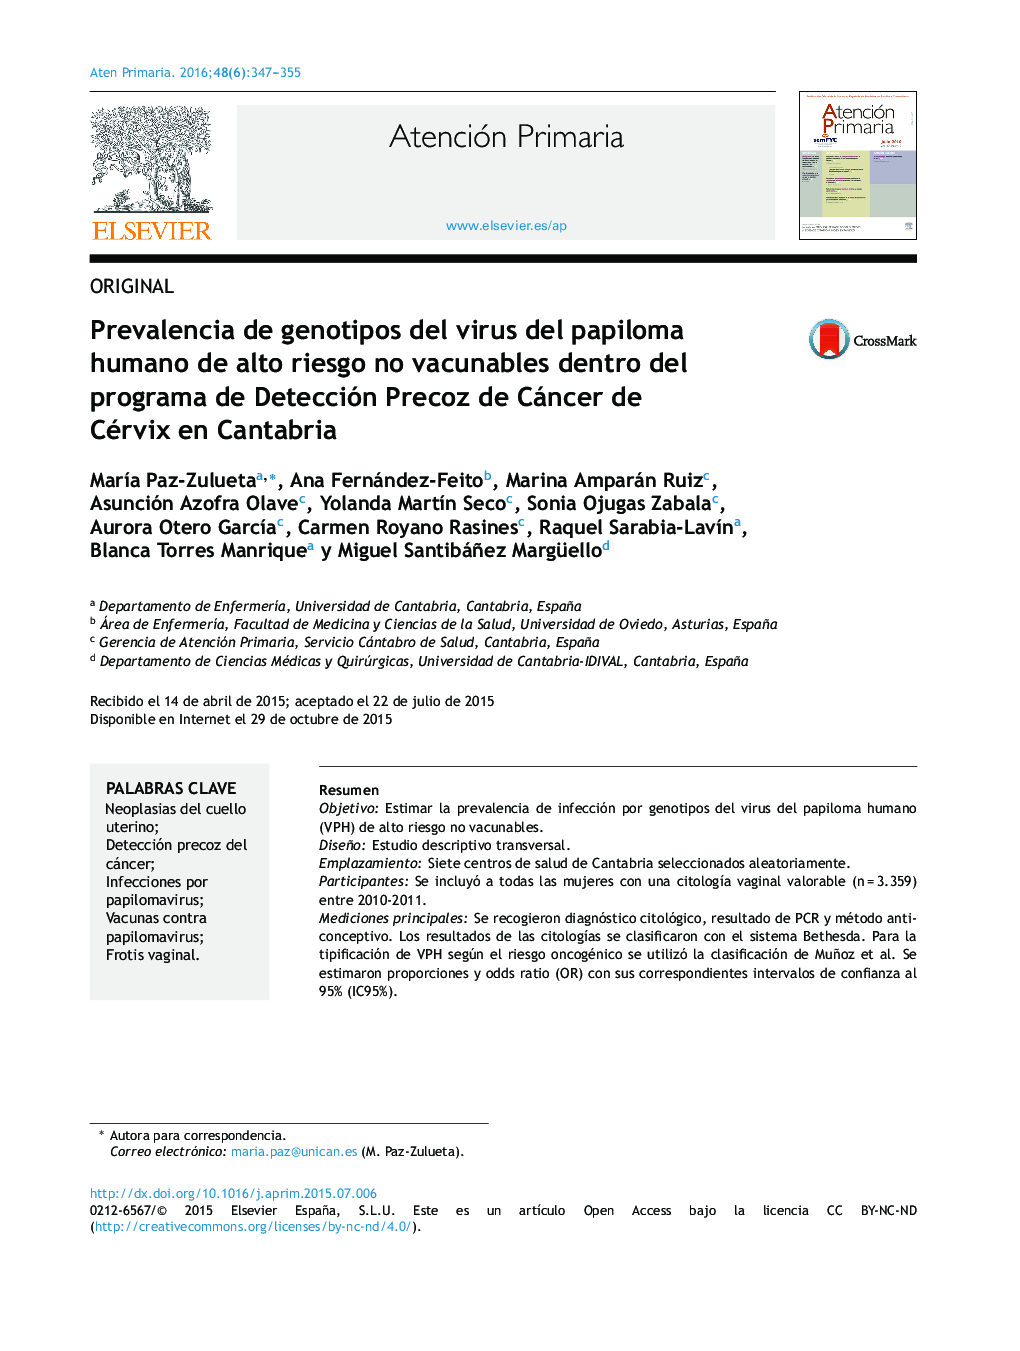 Prevalencia de genotipos del virus del papiloma humano de alto riesgo no vacunables dentro del programa de Detección Precoz de Cáncer de Cérvix en Cantabria